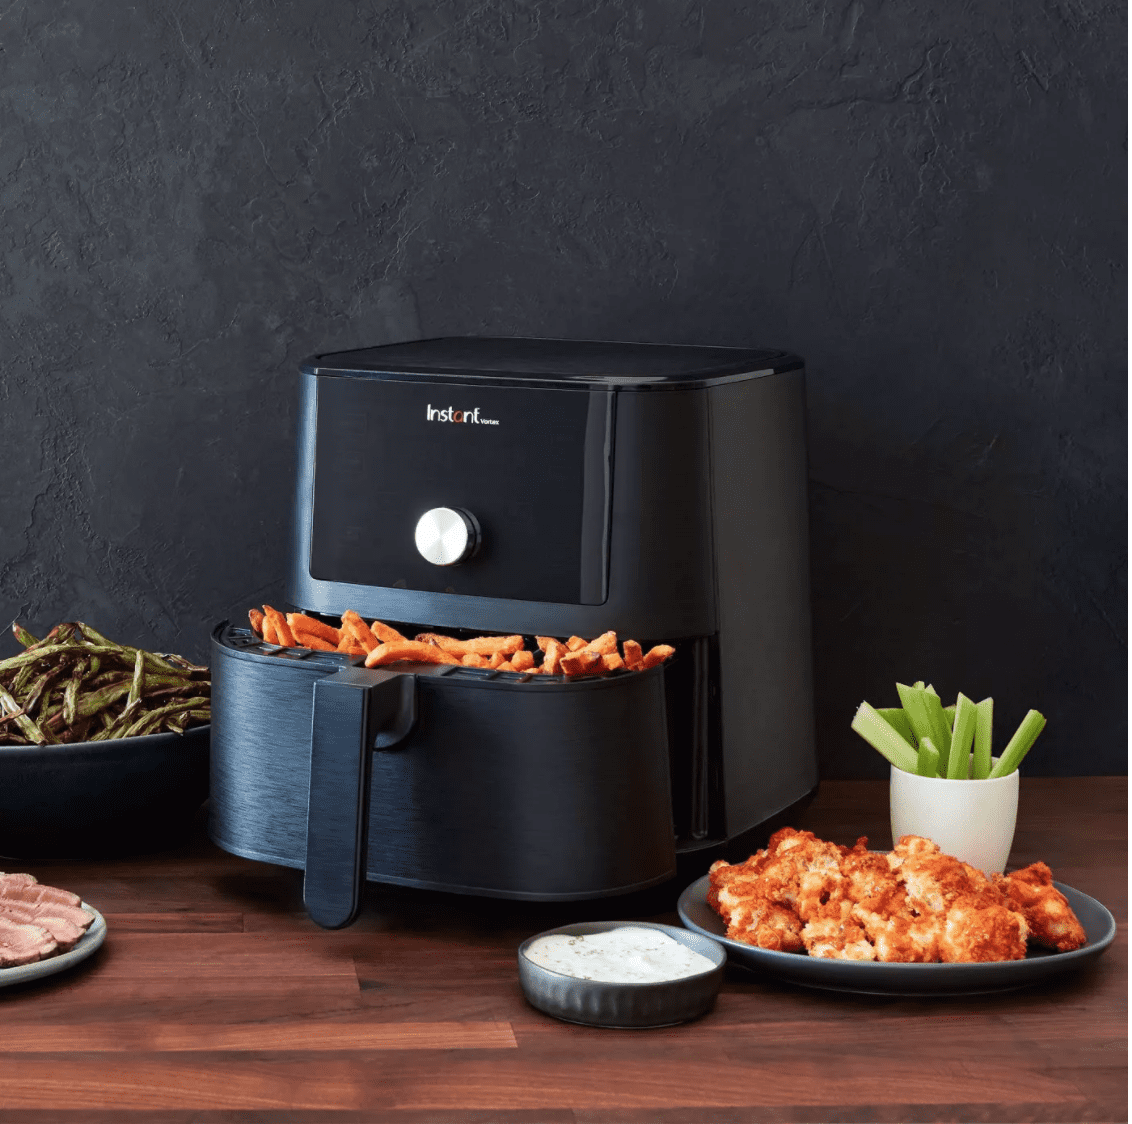 Instant Pot Vortex 4 Quart Air Fryer - appliances - by owner - sale -  craigslist